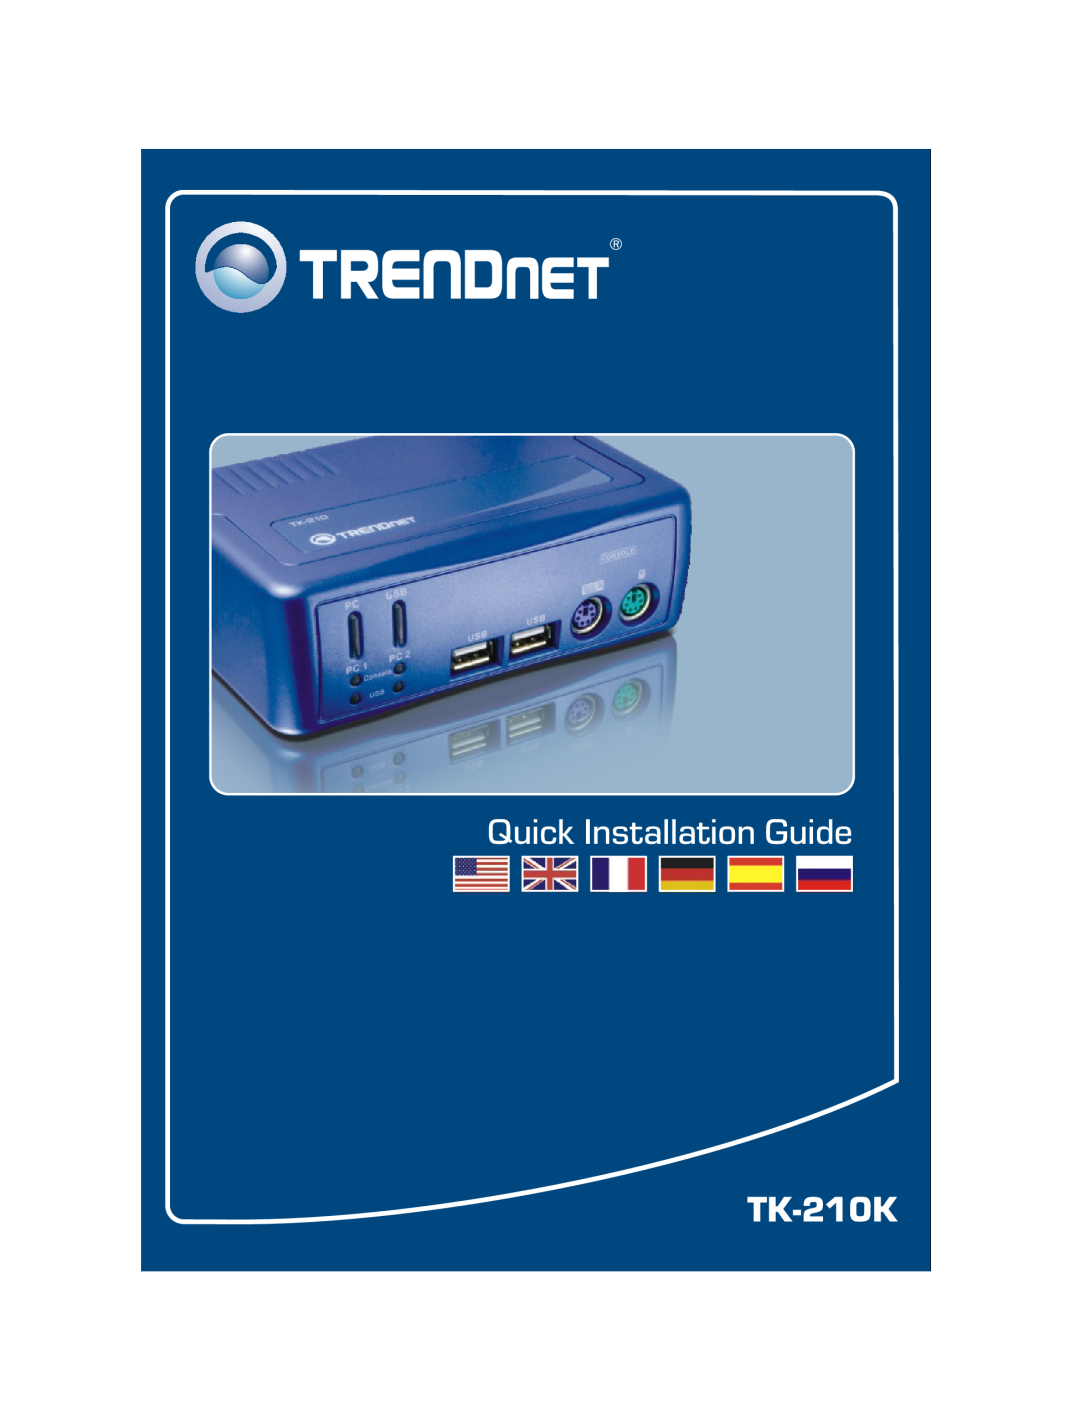 TRENDnet manual Quick Installation Guide, TK-210K 